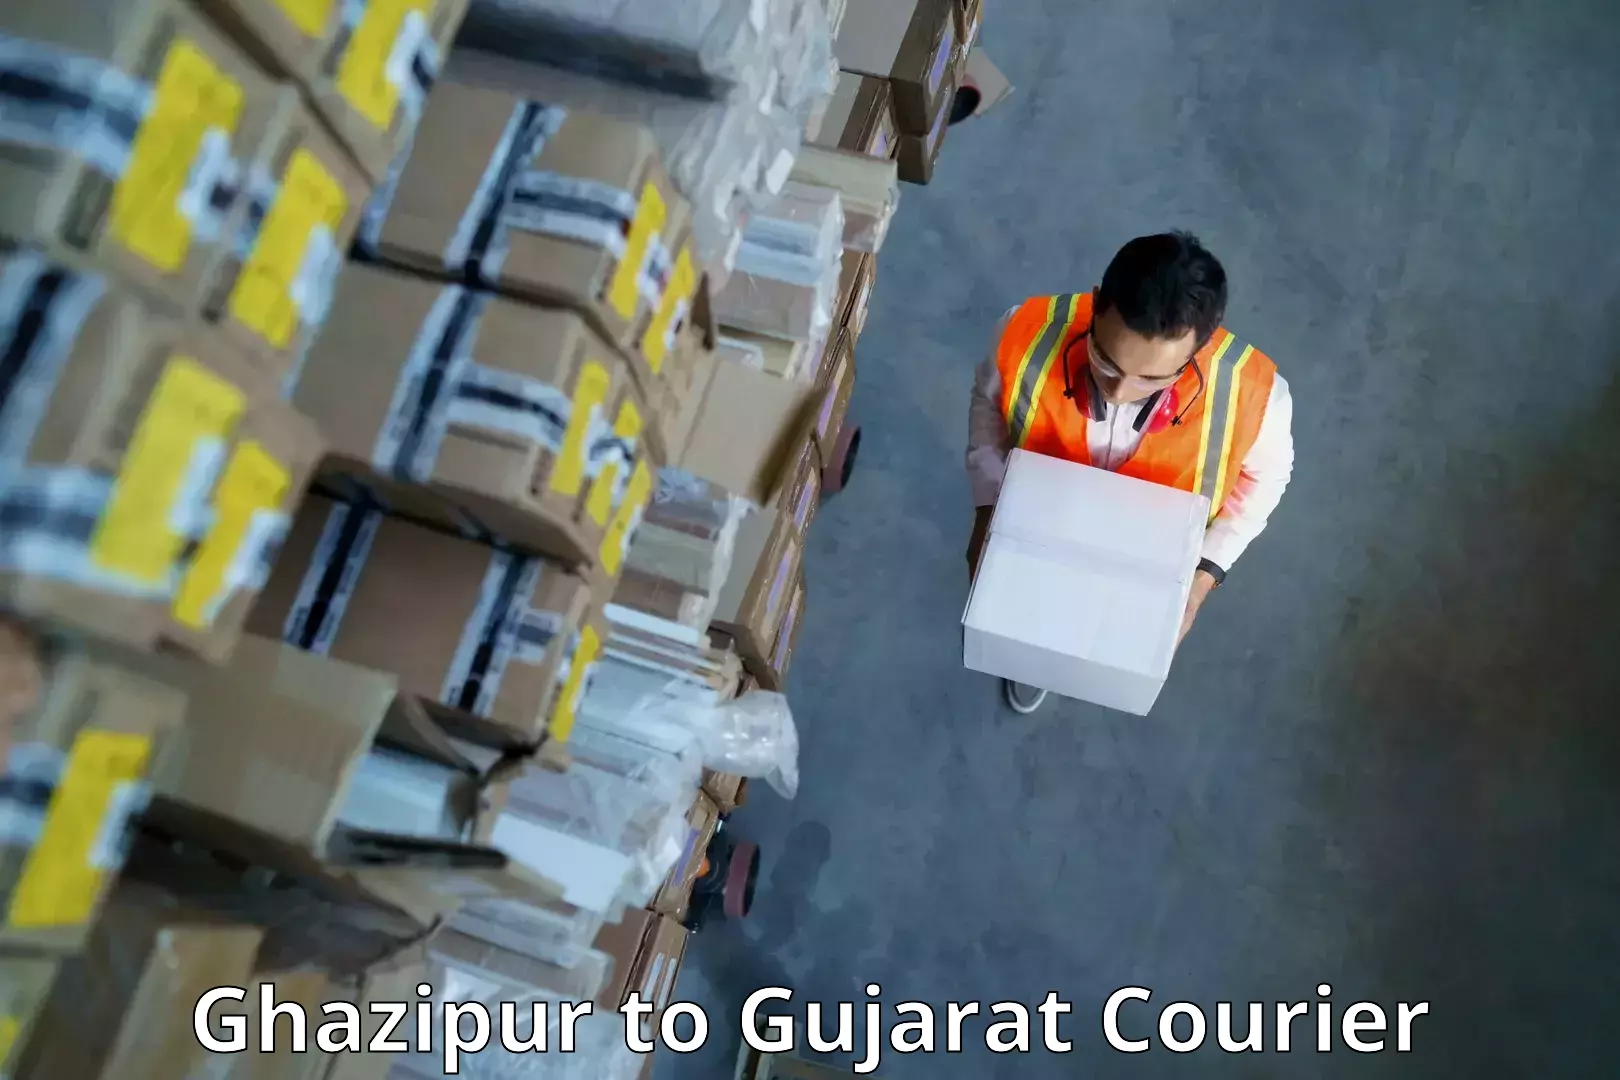 On-demand shipping options Ghazipur to Kadodara